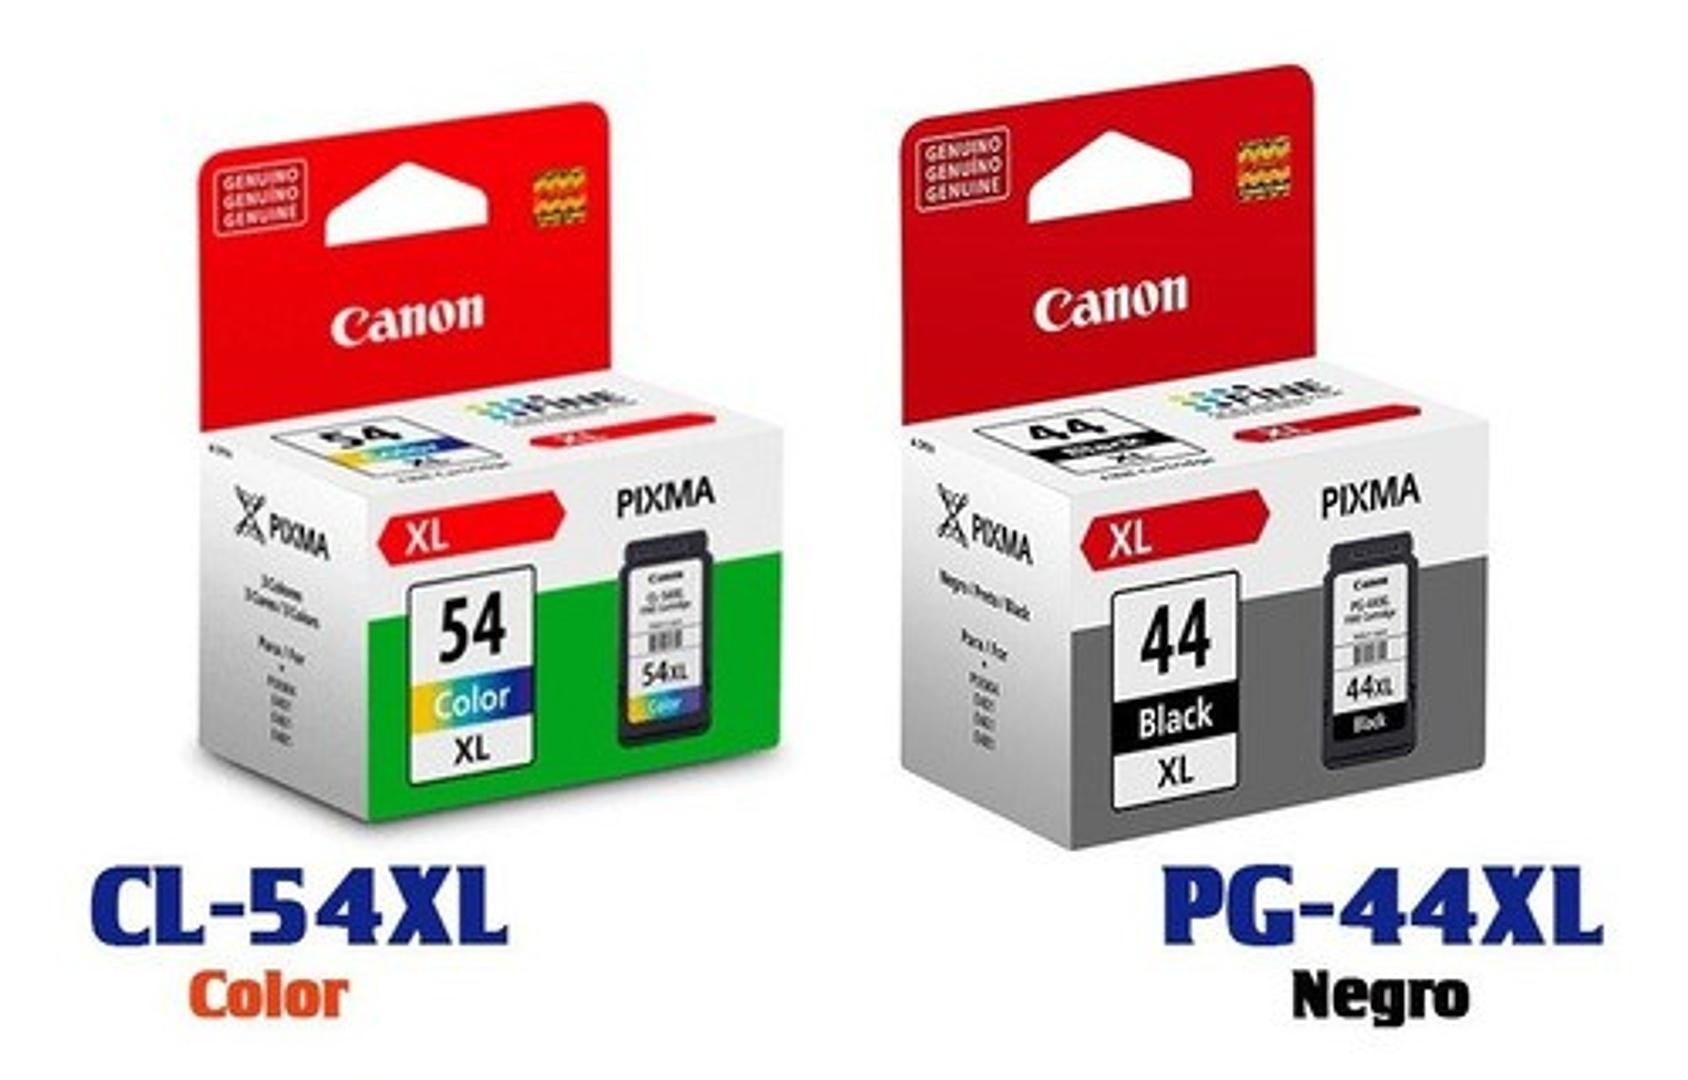 impresoras y scanners - CARTUCHO CANON PG-44 XL NEGRO, Y 54XL COLOR  ALTO RENDIMIENTO MAS CANTIDAD  0